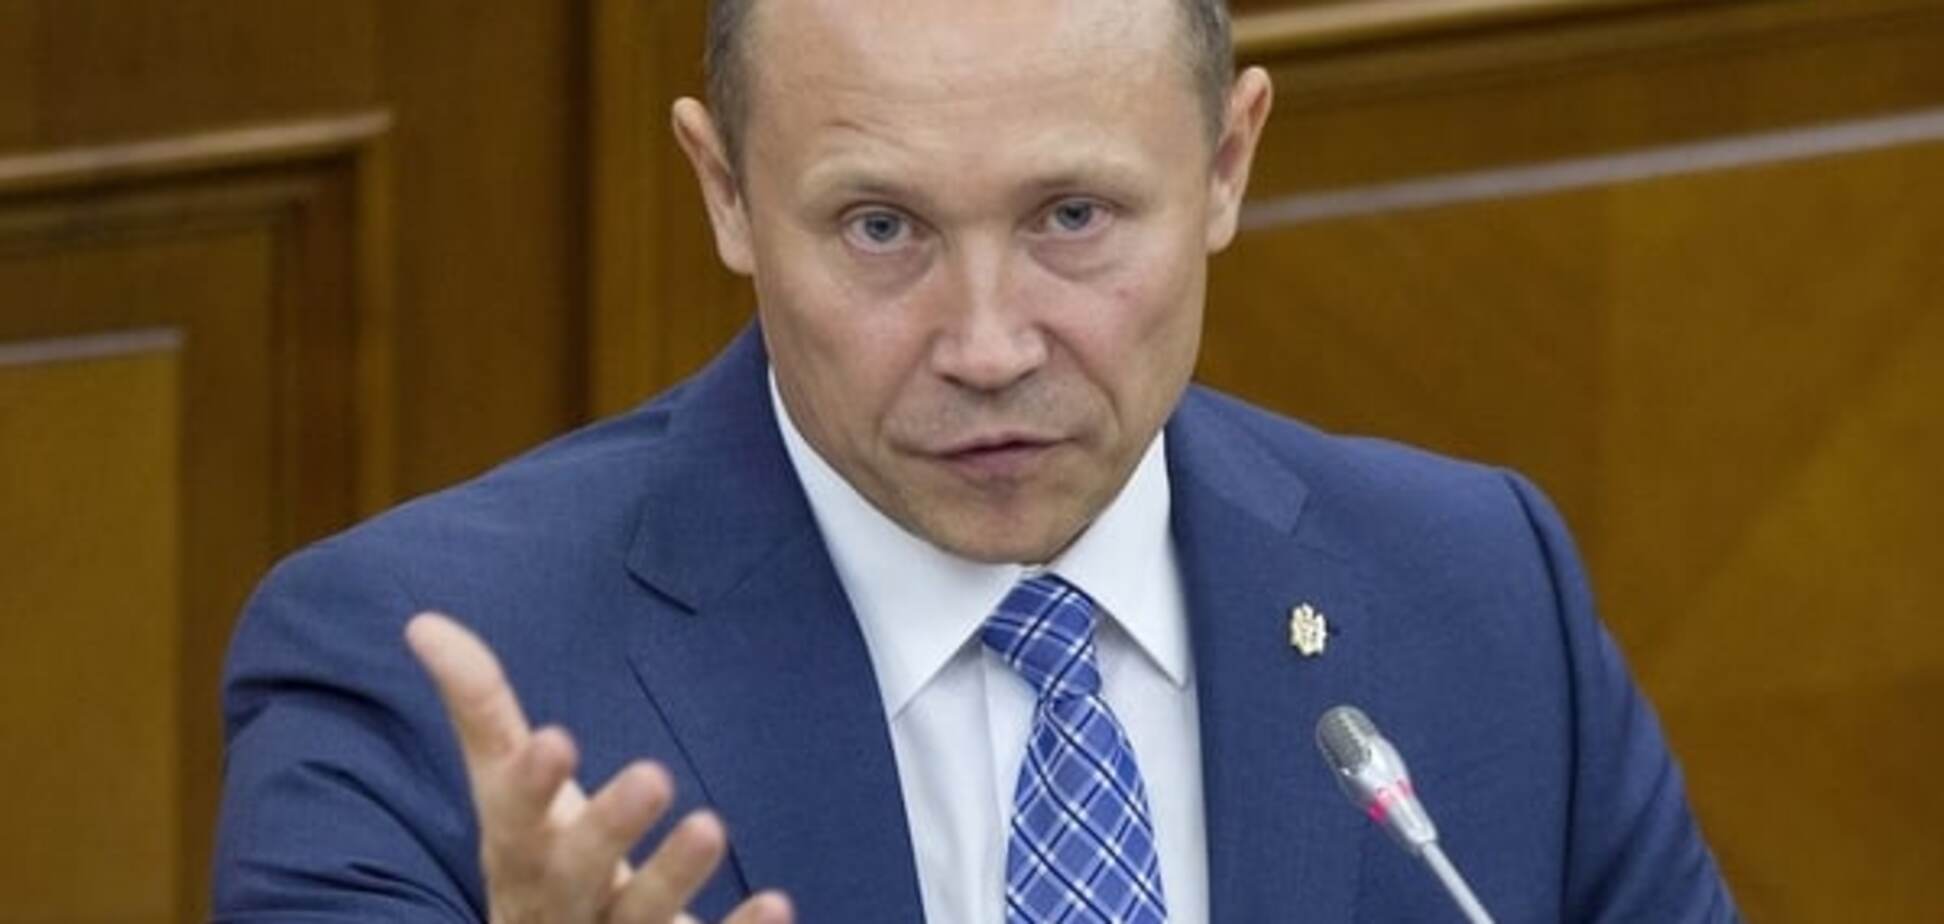 Проти Молдови зріє змова, мета якої - перешкодити євроінтеграції - прем'єр